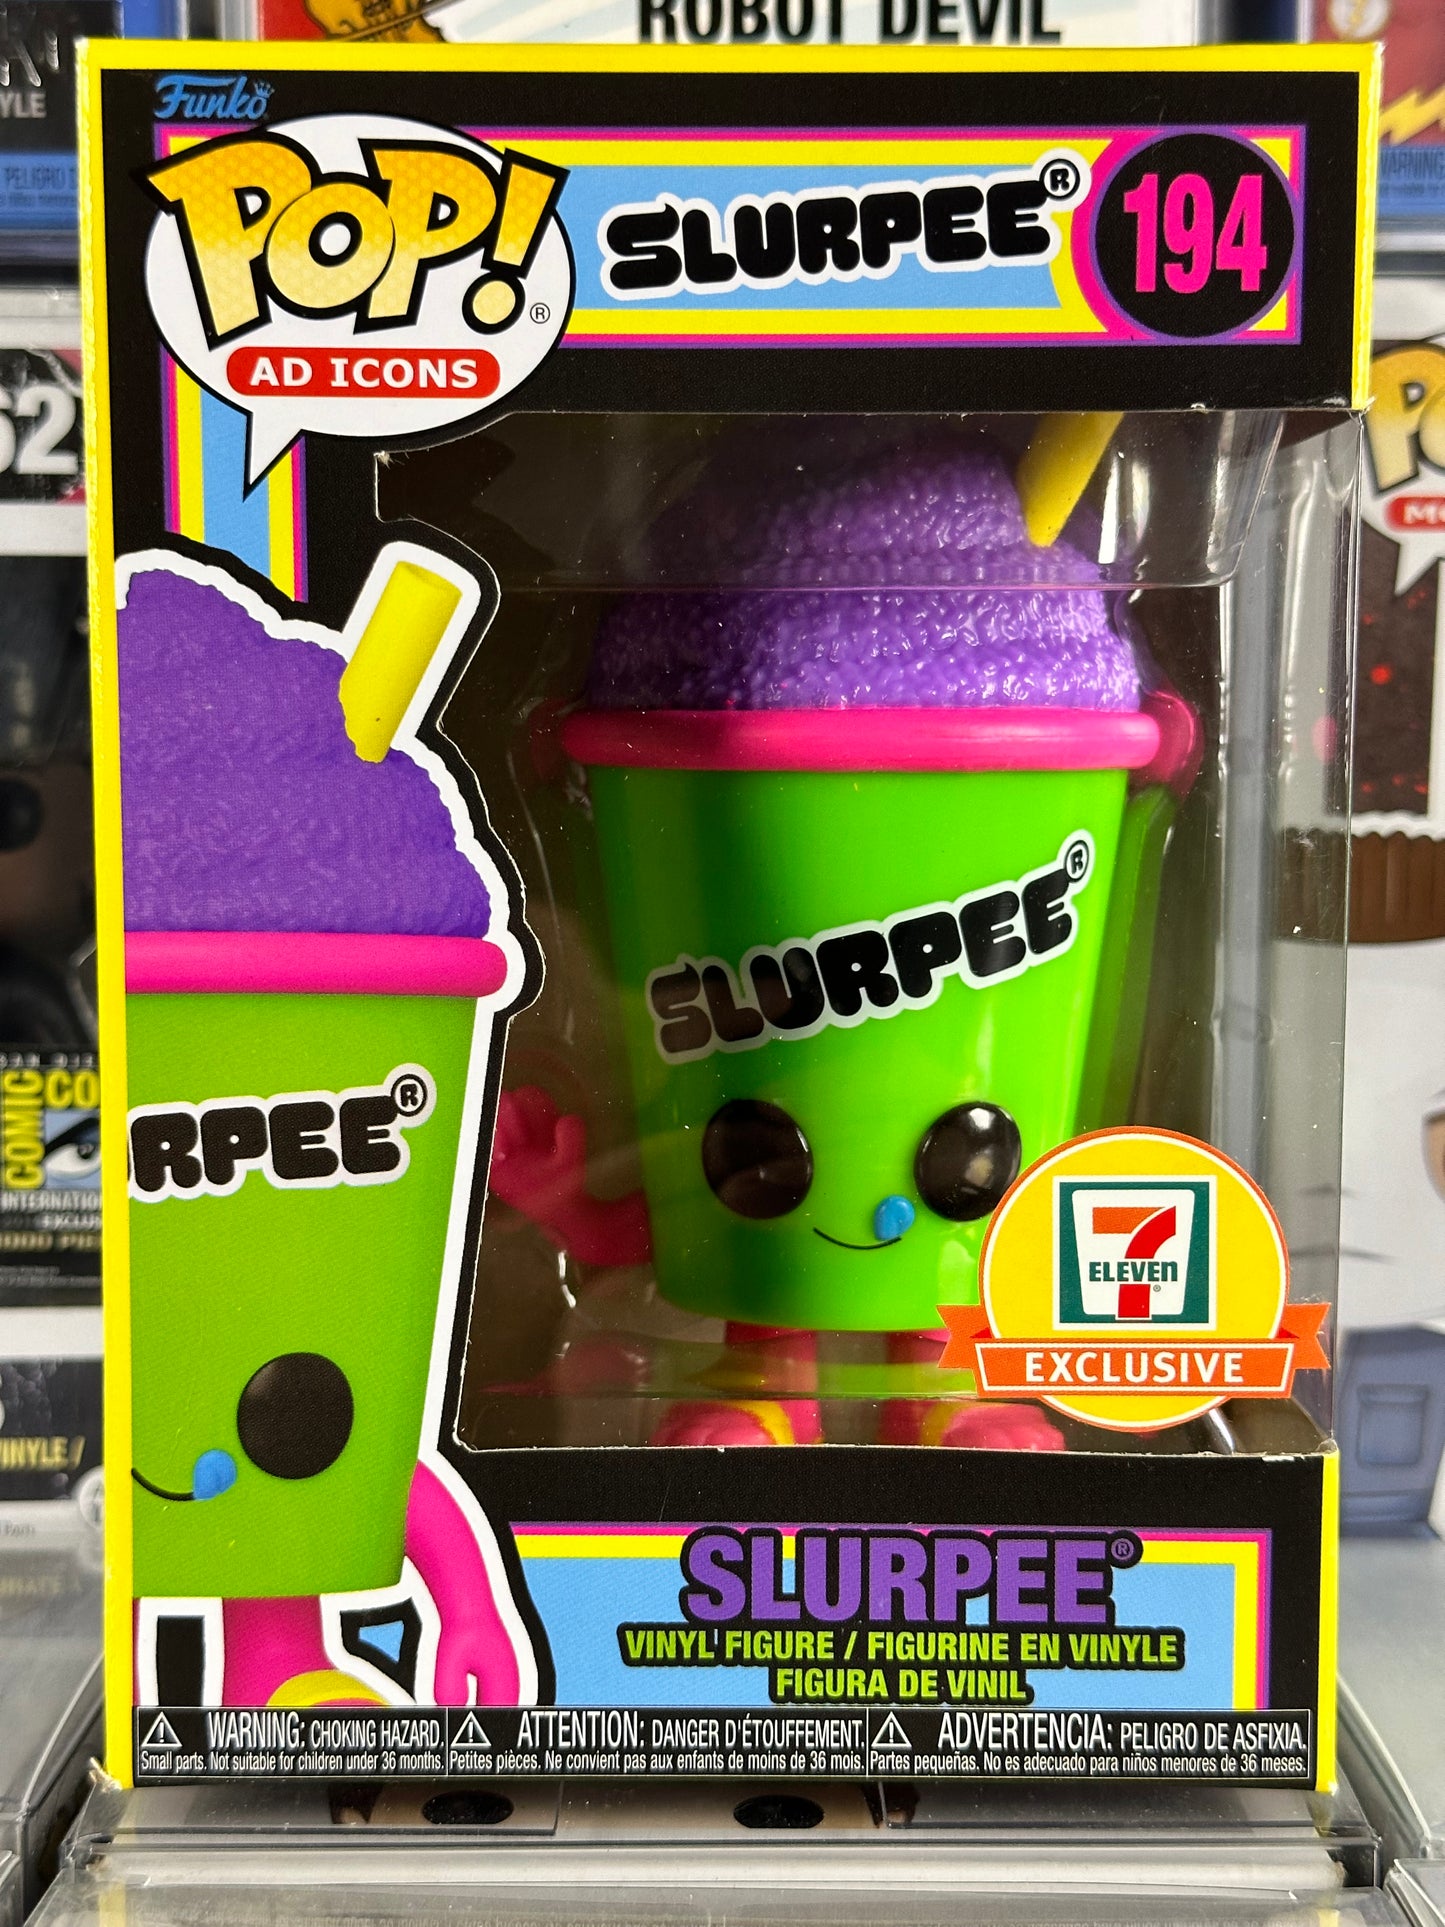 Pop Ad Icons - Slurpee (Green Cup) (Blacklight) (194) 7 Eleven Exclusive